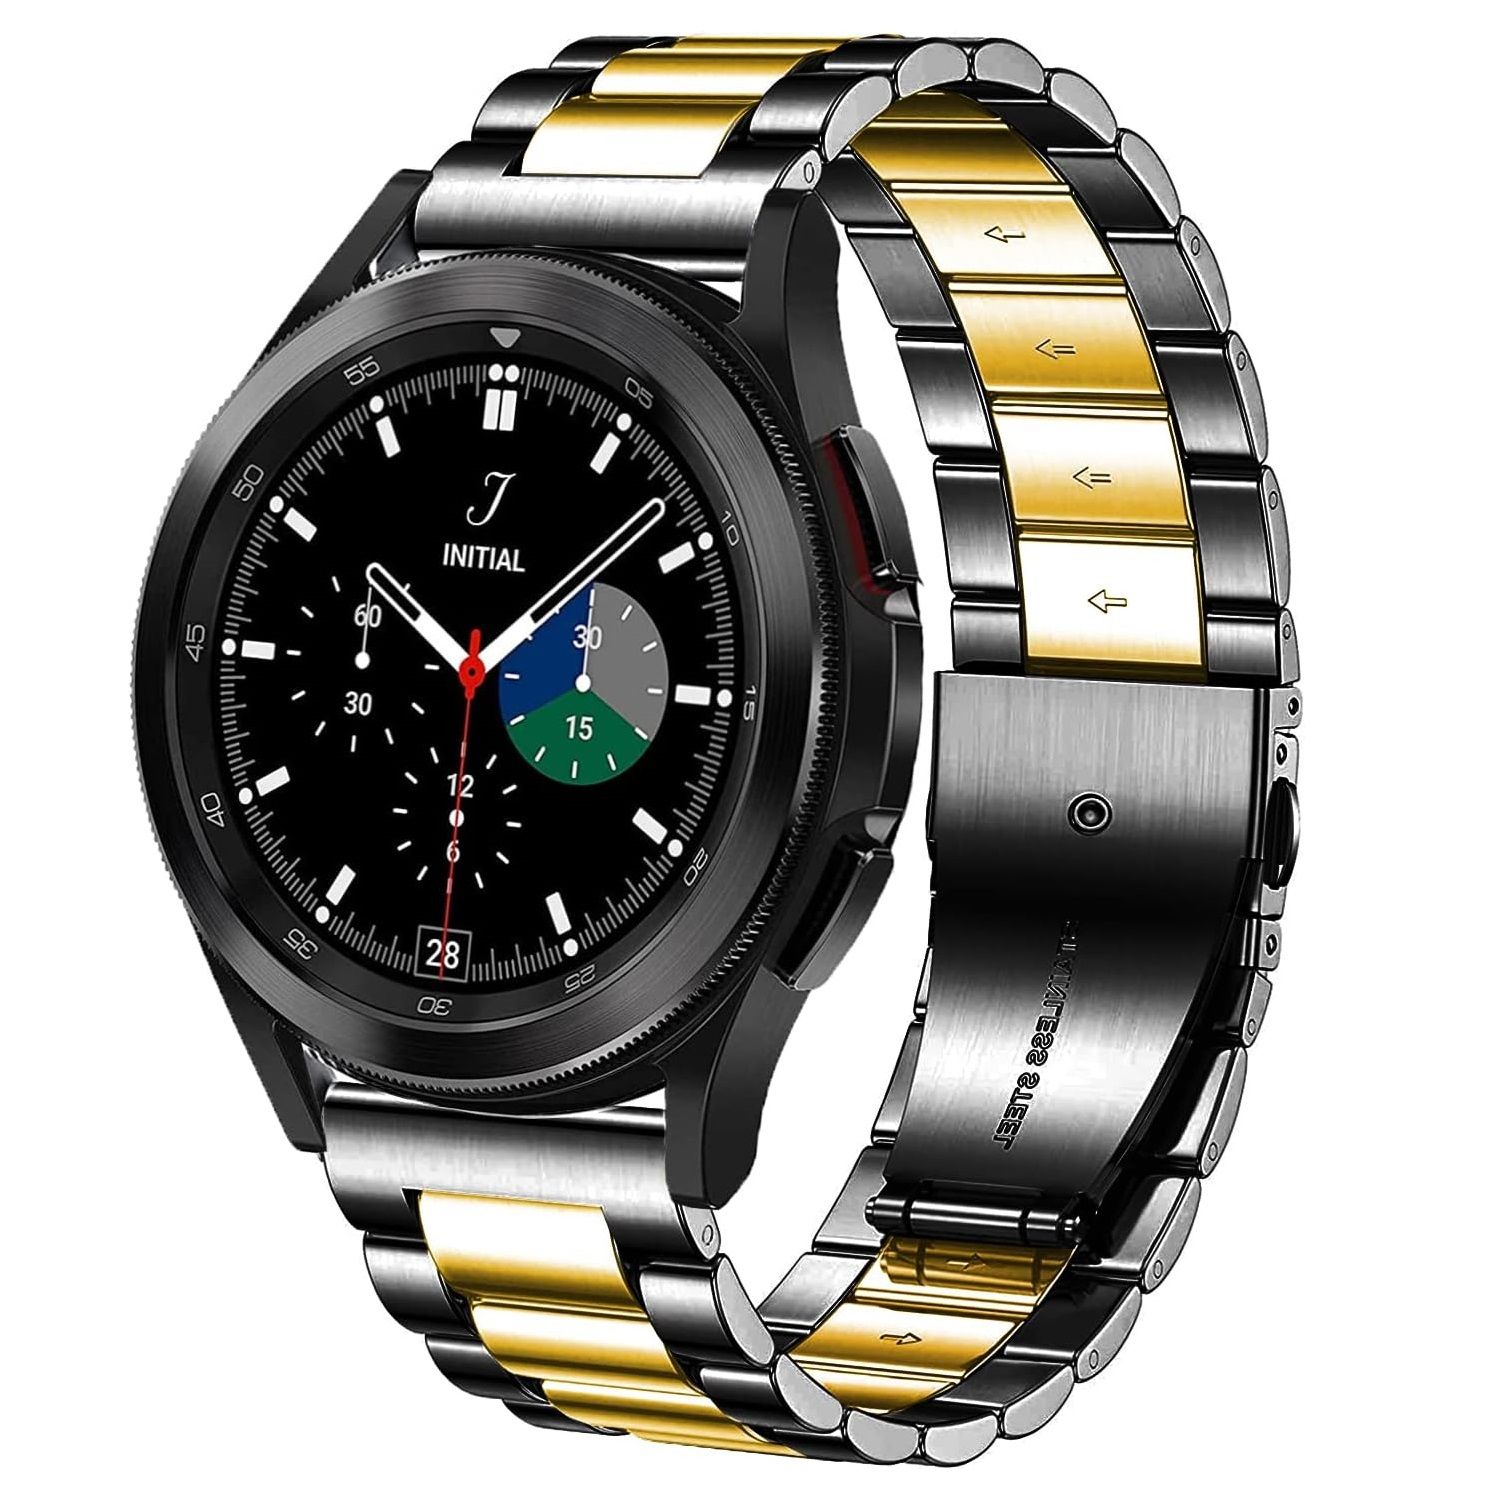 Dealele Galaxy Watch 5 Band e relógio posicionado em ângulo